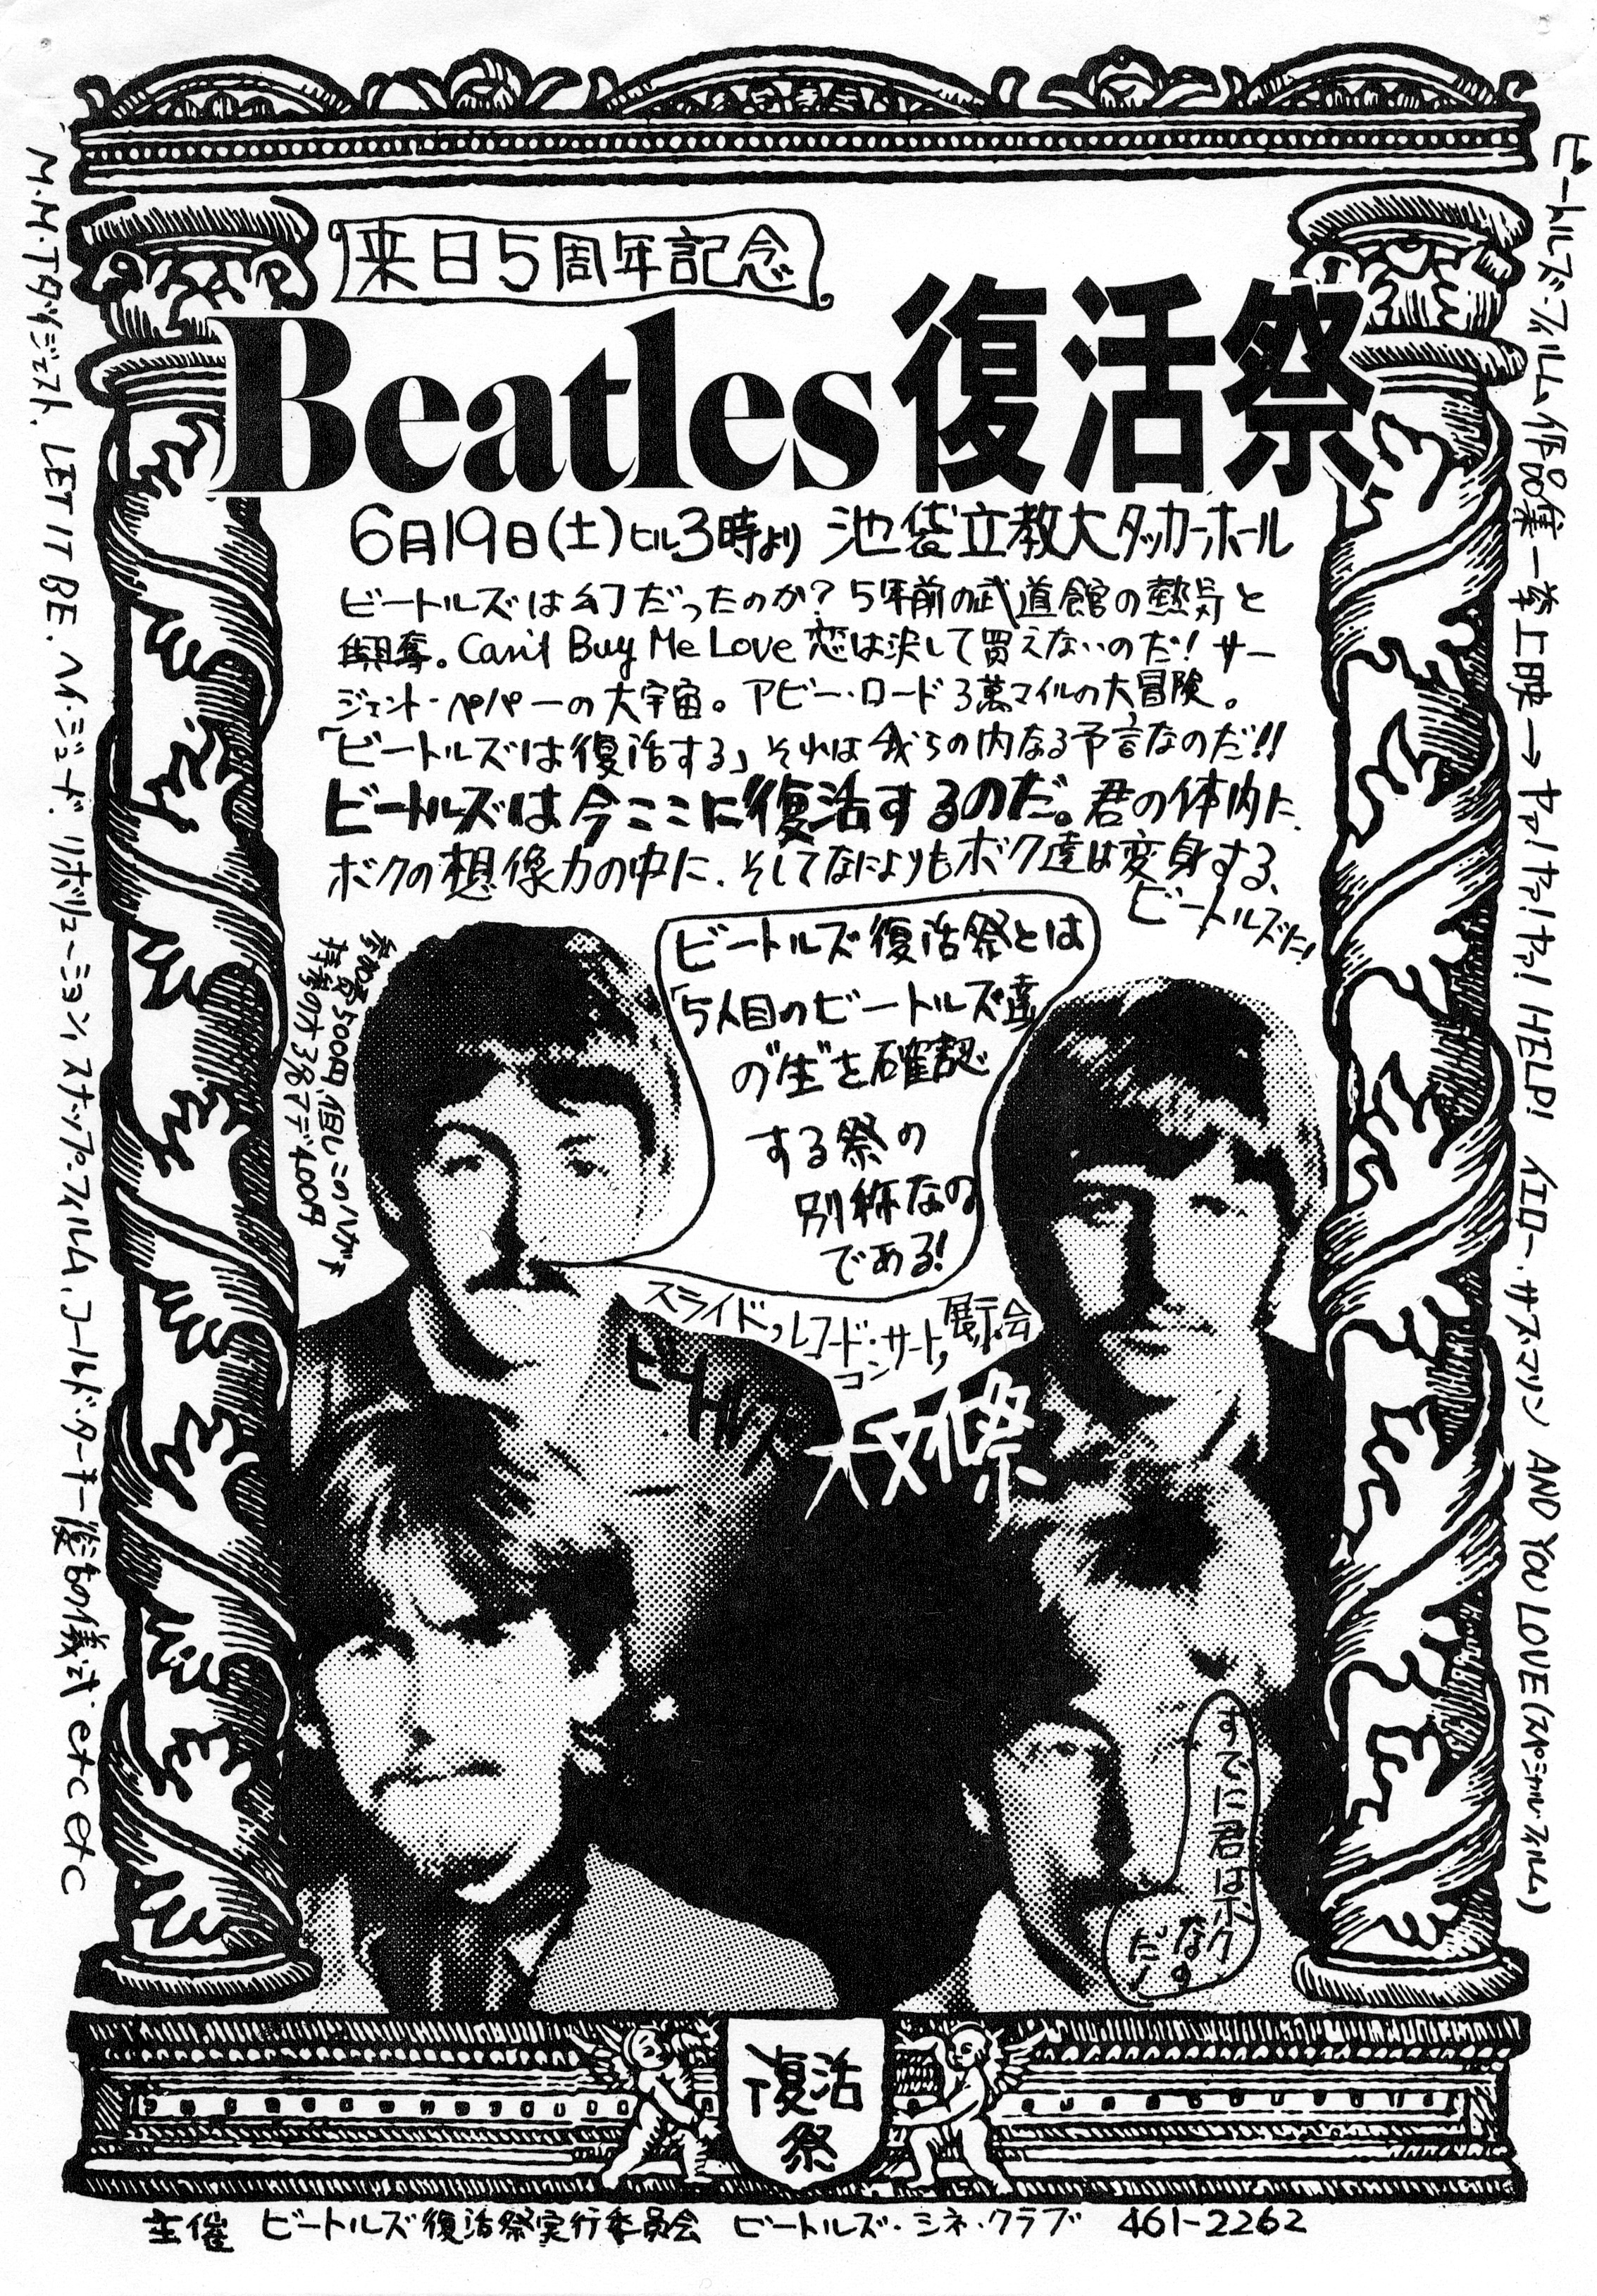 1971年「来日５周年記念ビートルズ復活祭」ポスター。